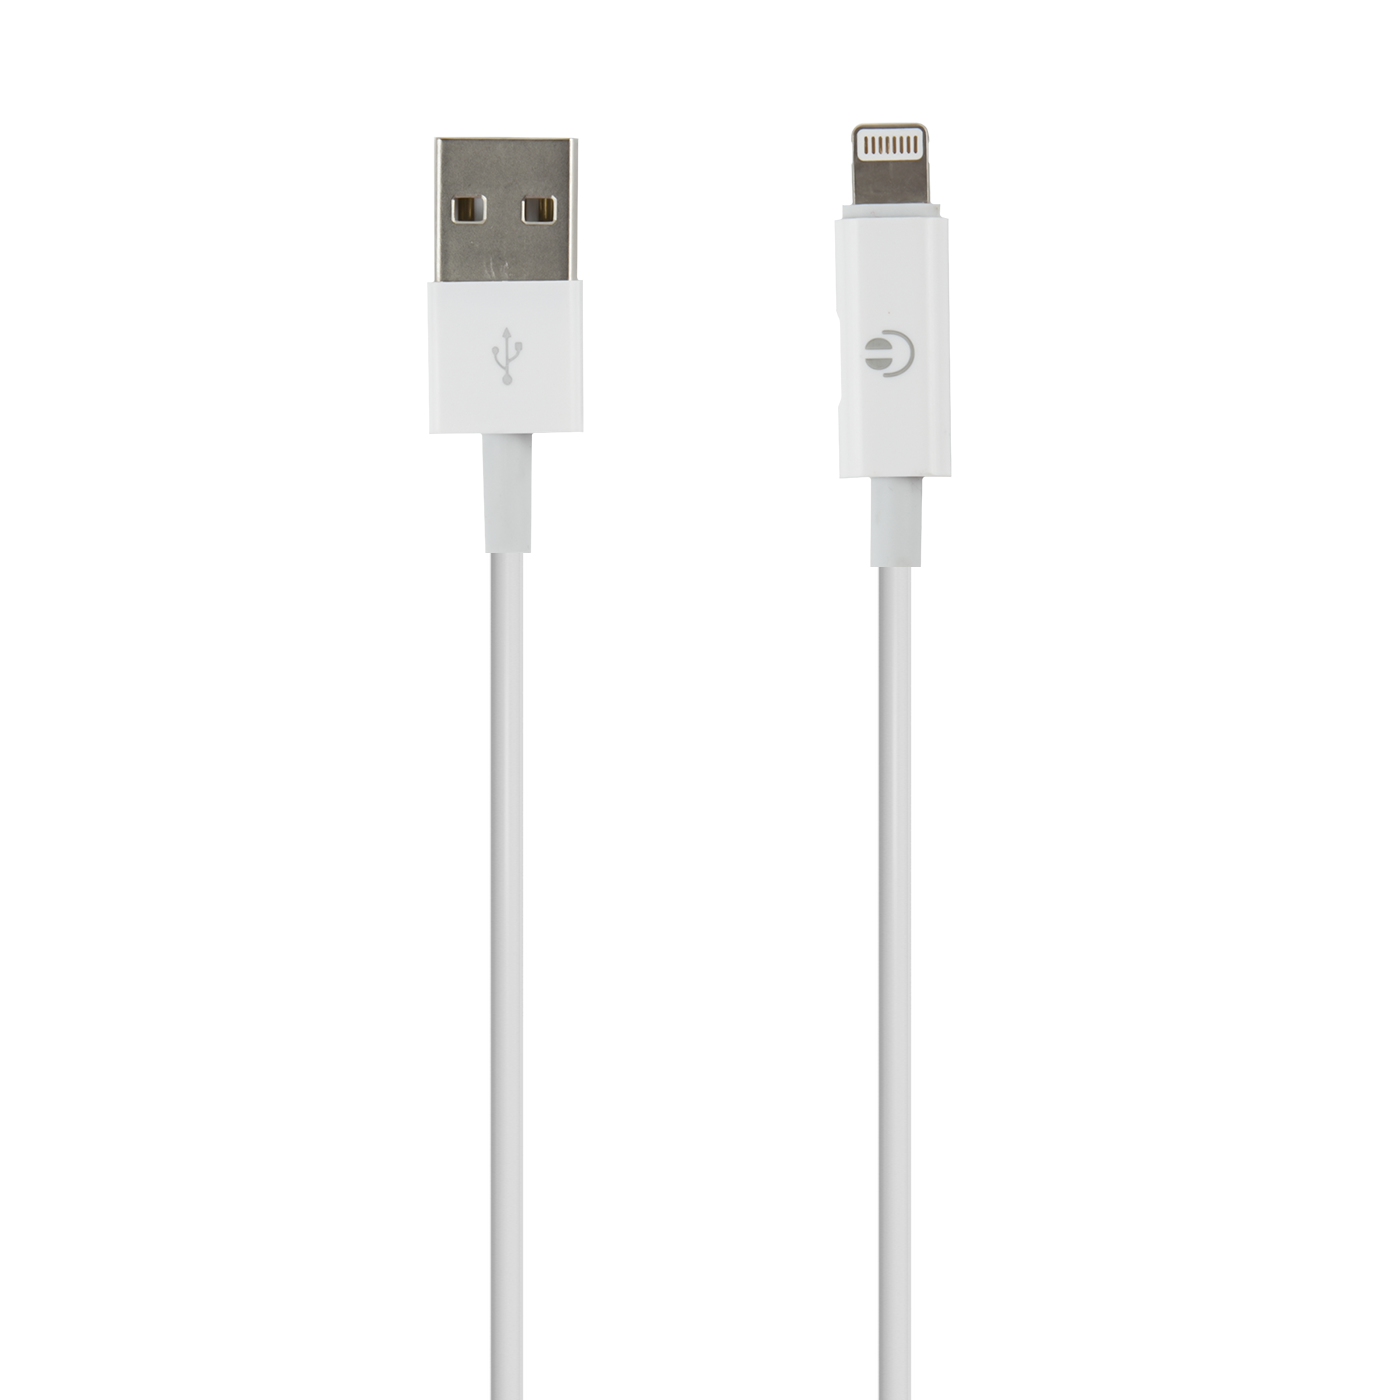 Дата-кабель Red Line USB – 8 - pin с переходником на наушники с разъемом 8 - pin